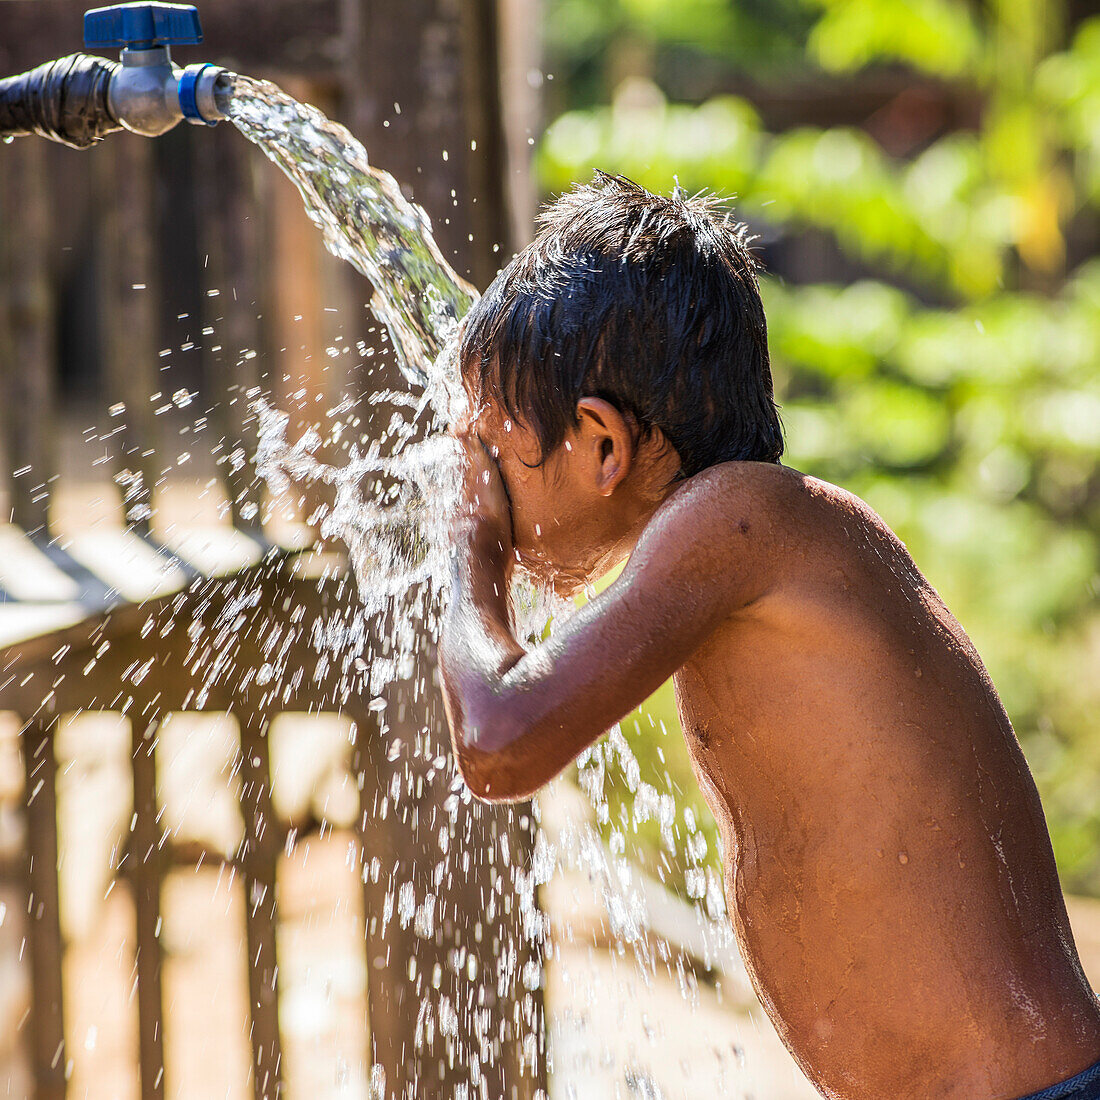 'Ein Junge steht unter einem Hahn und reinigt sein Gesicht mit dem Spritzwasser, Kamu Dorf; Tambon Po, Chang Wat Chiang Rai, Thailand'